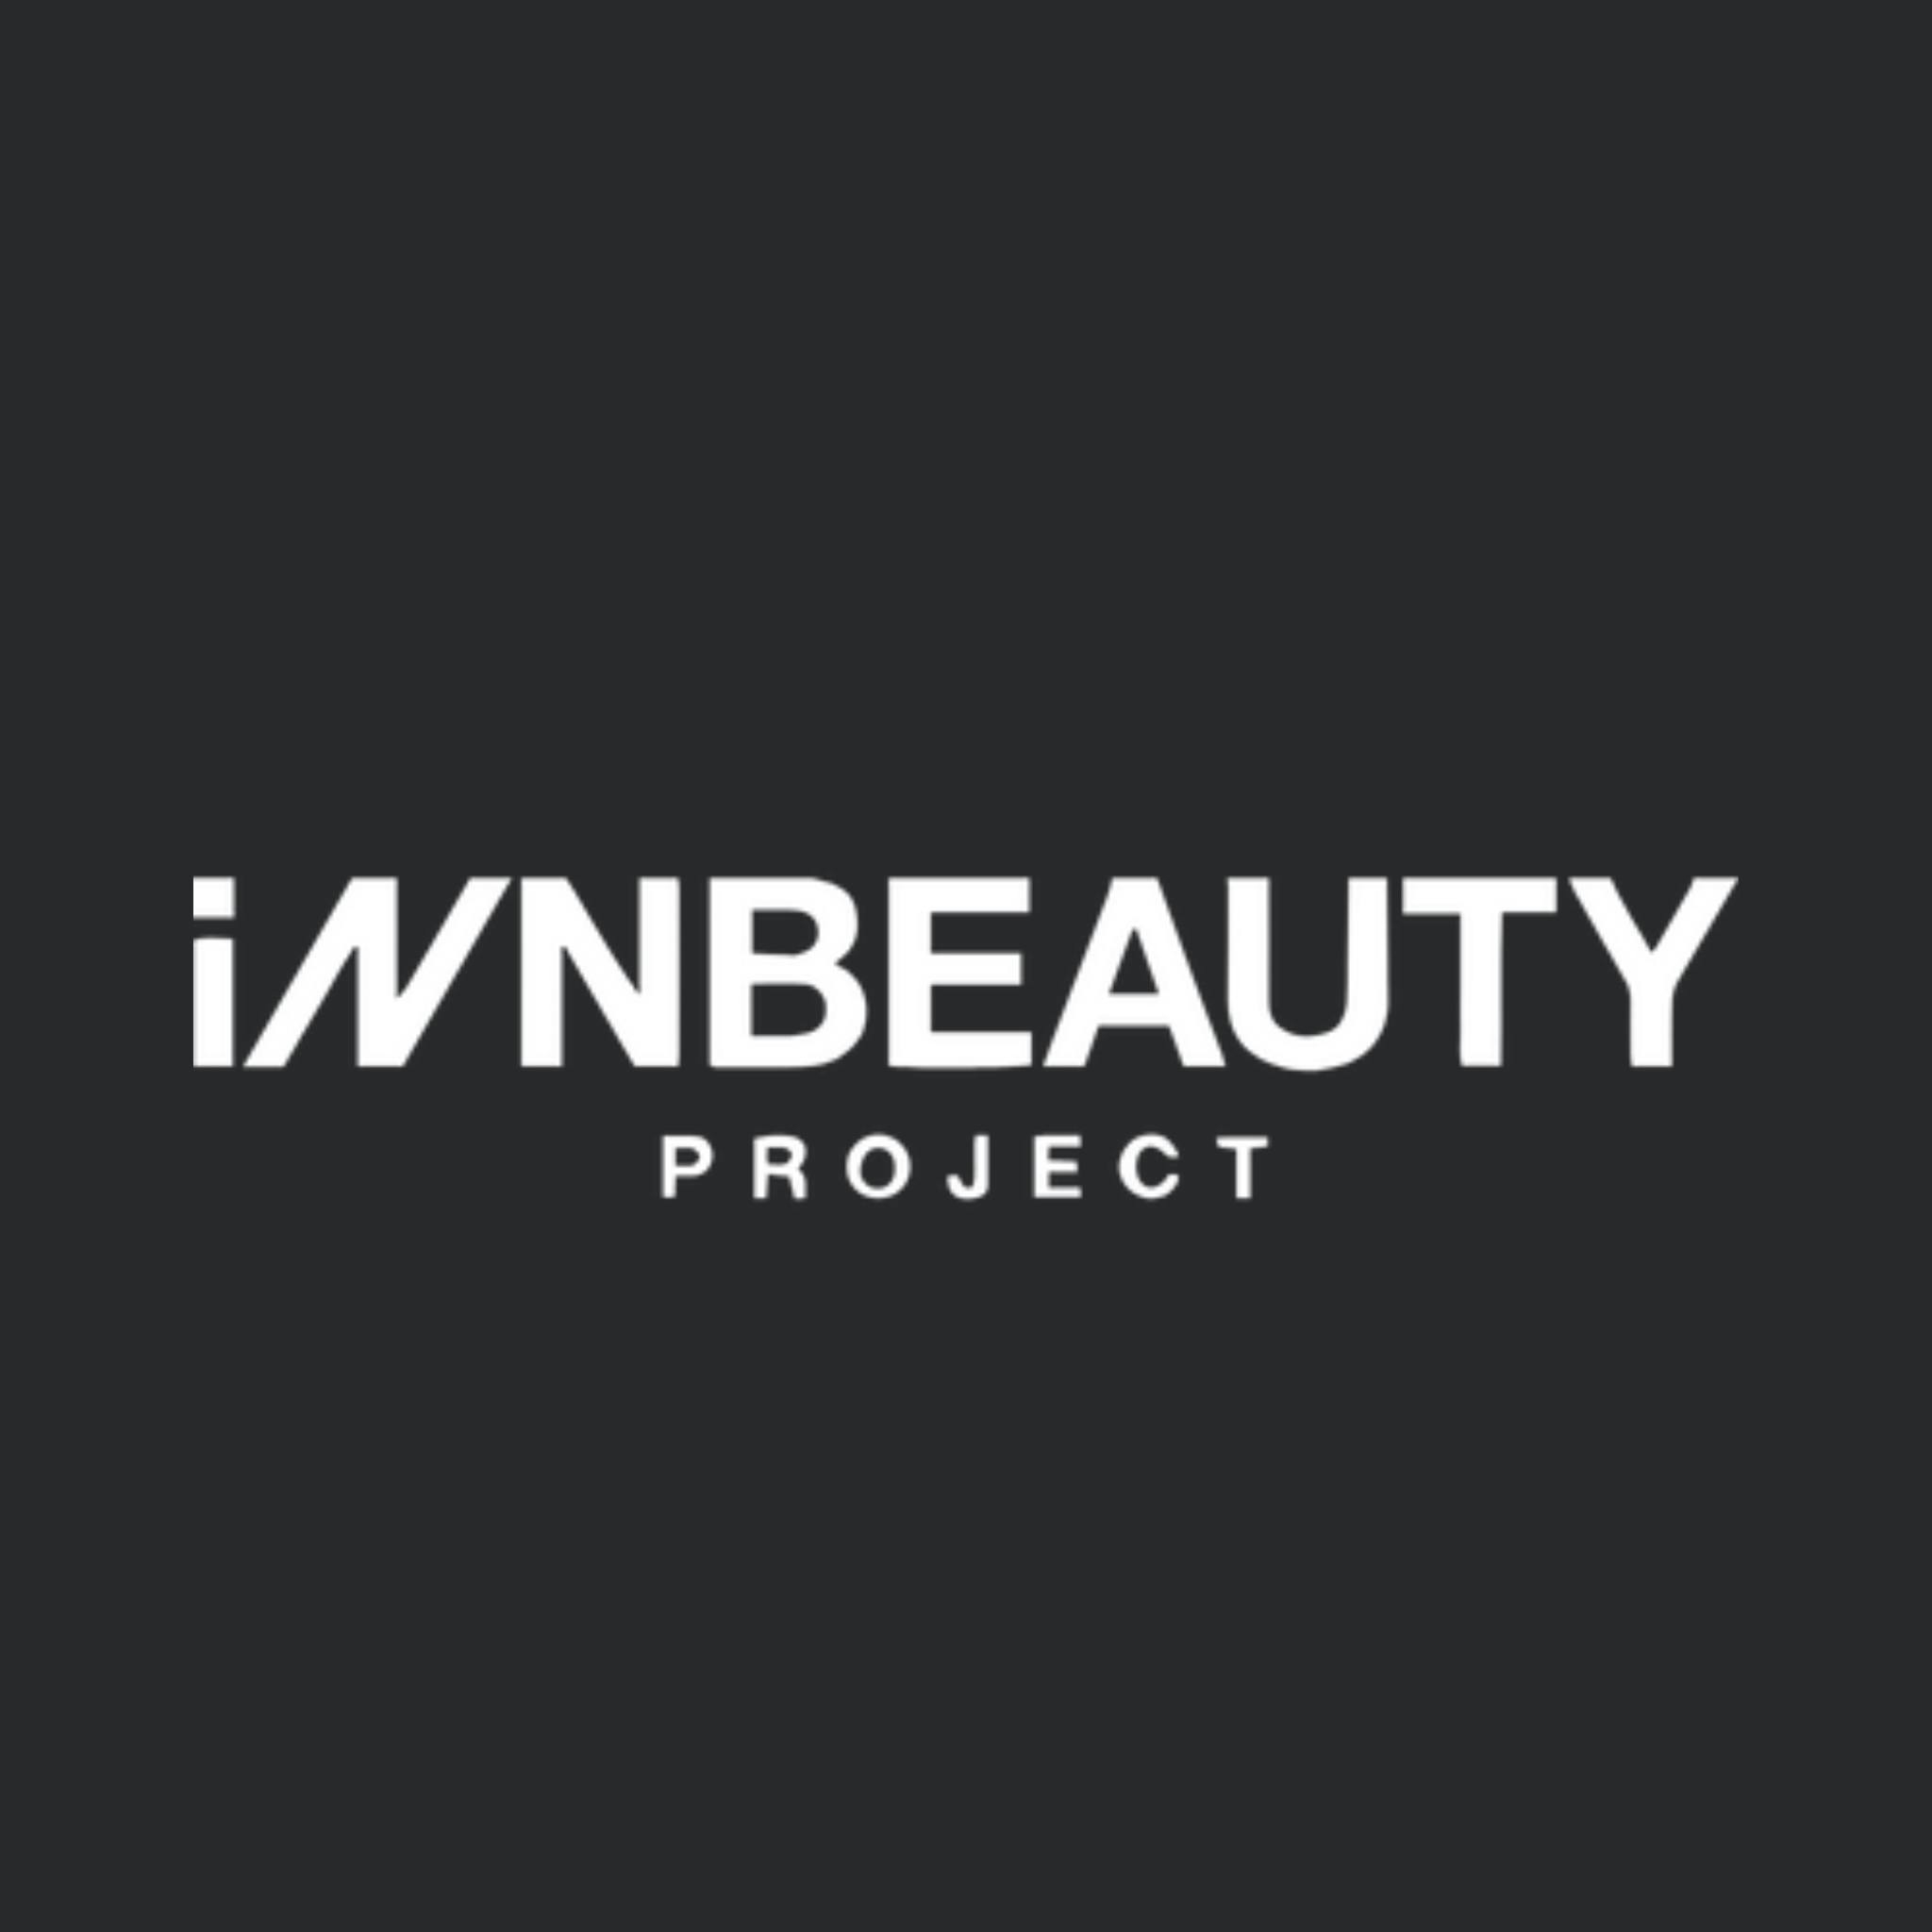 Innbeauty Project